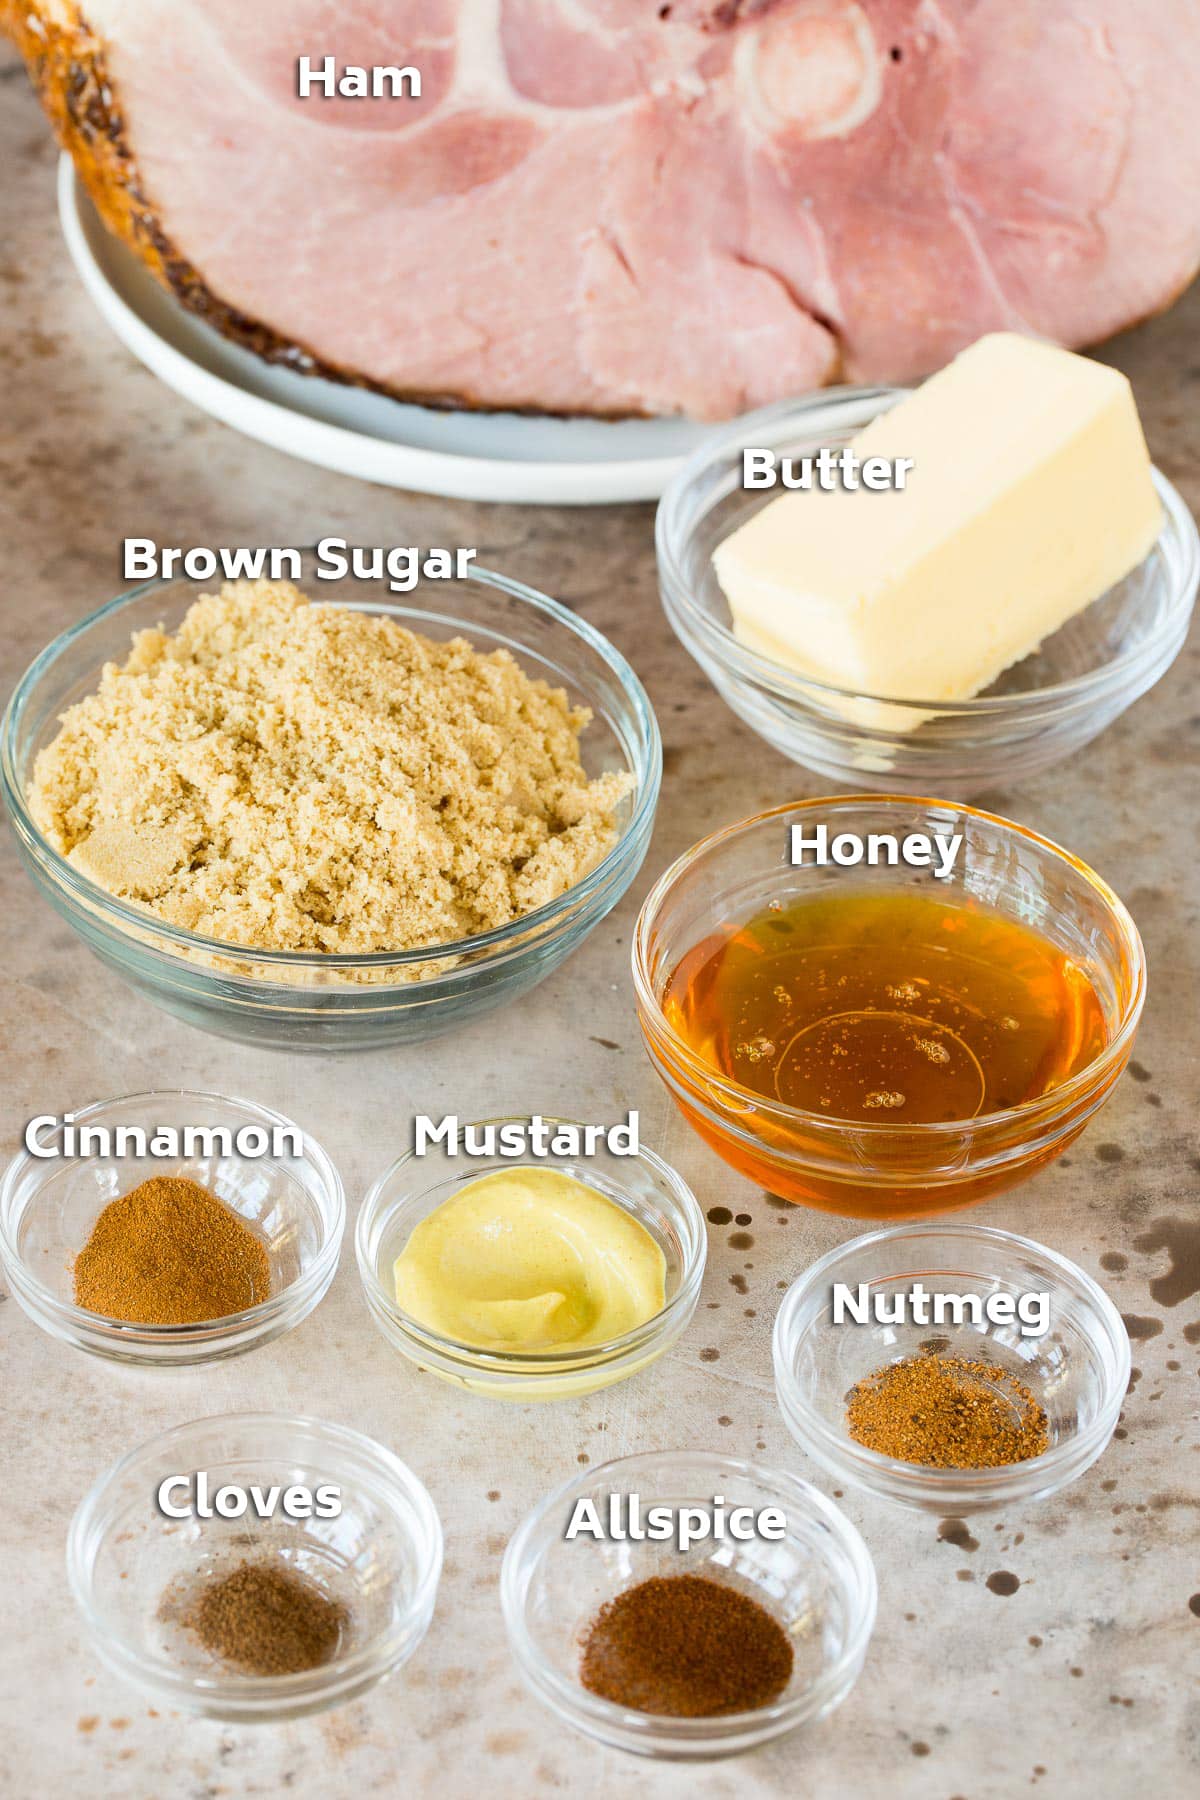 Ingredients including pork, brown sugar, honey, butter and seasonings.